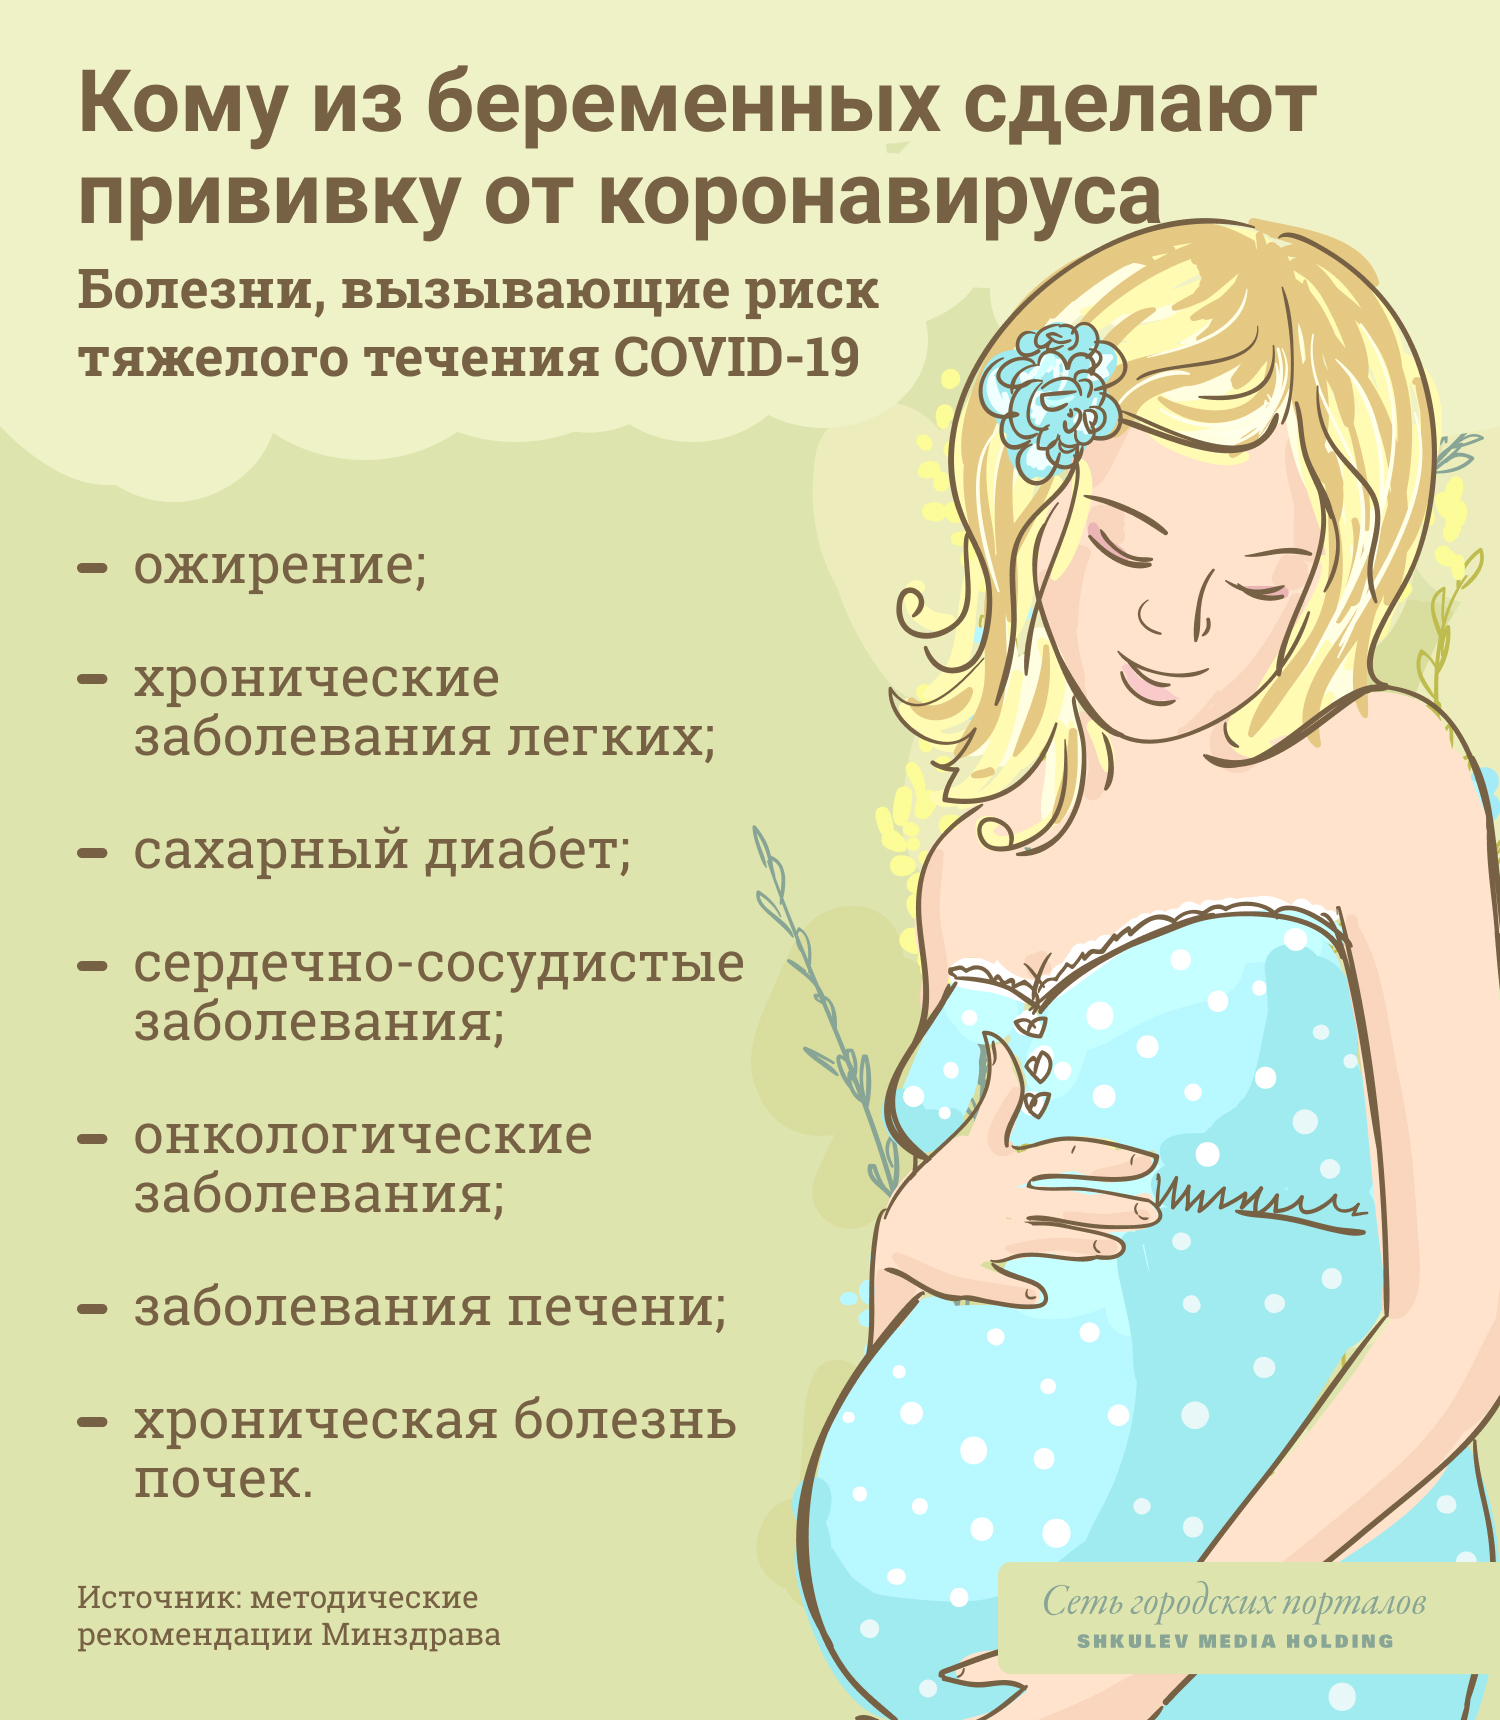 Беременным будут делать прививку от коронавируса только в исключительных случаях